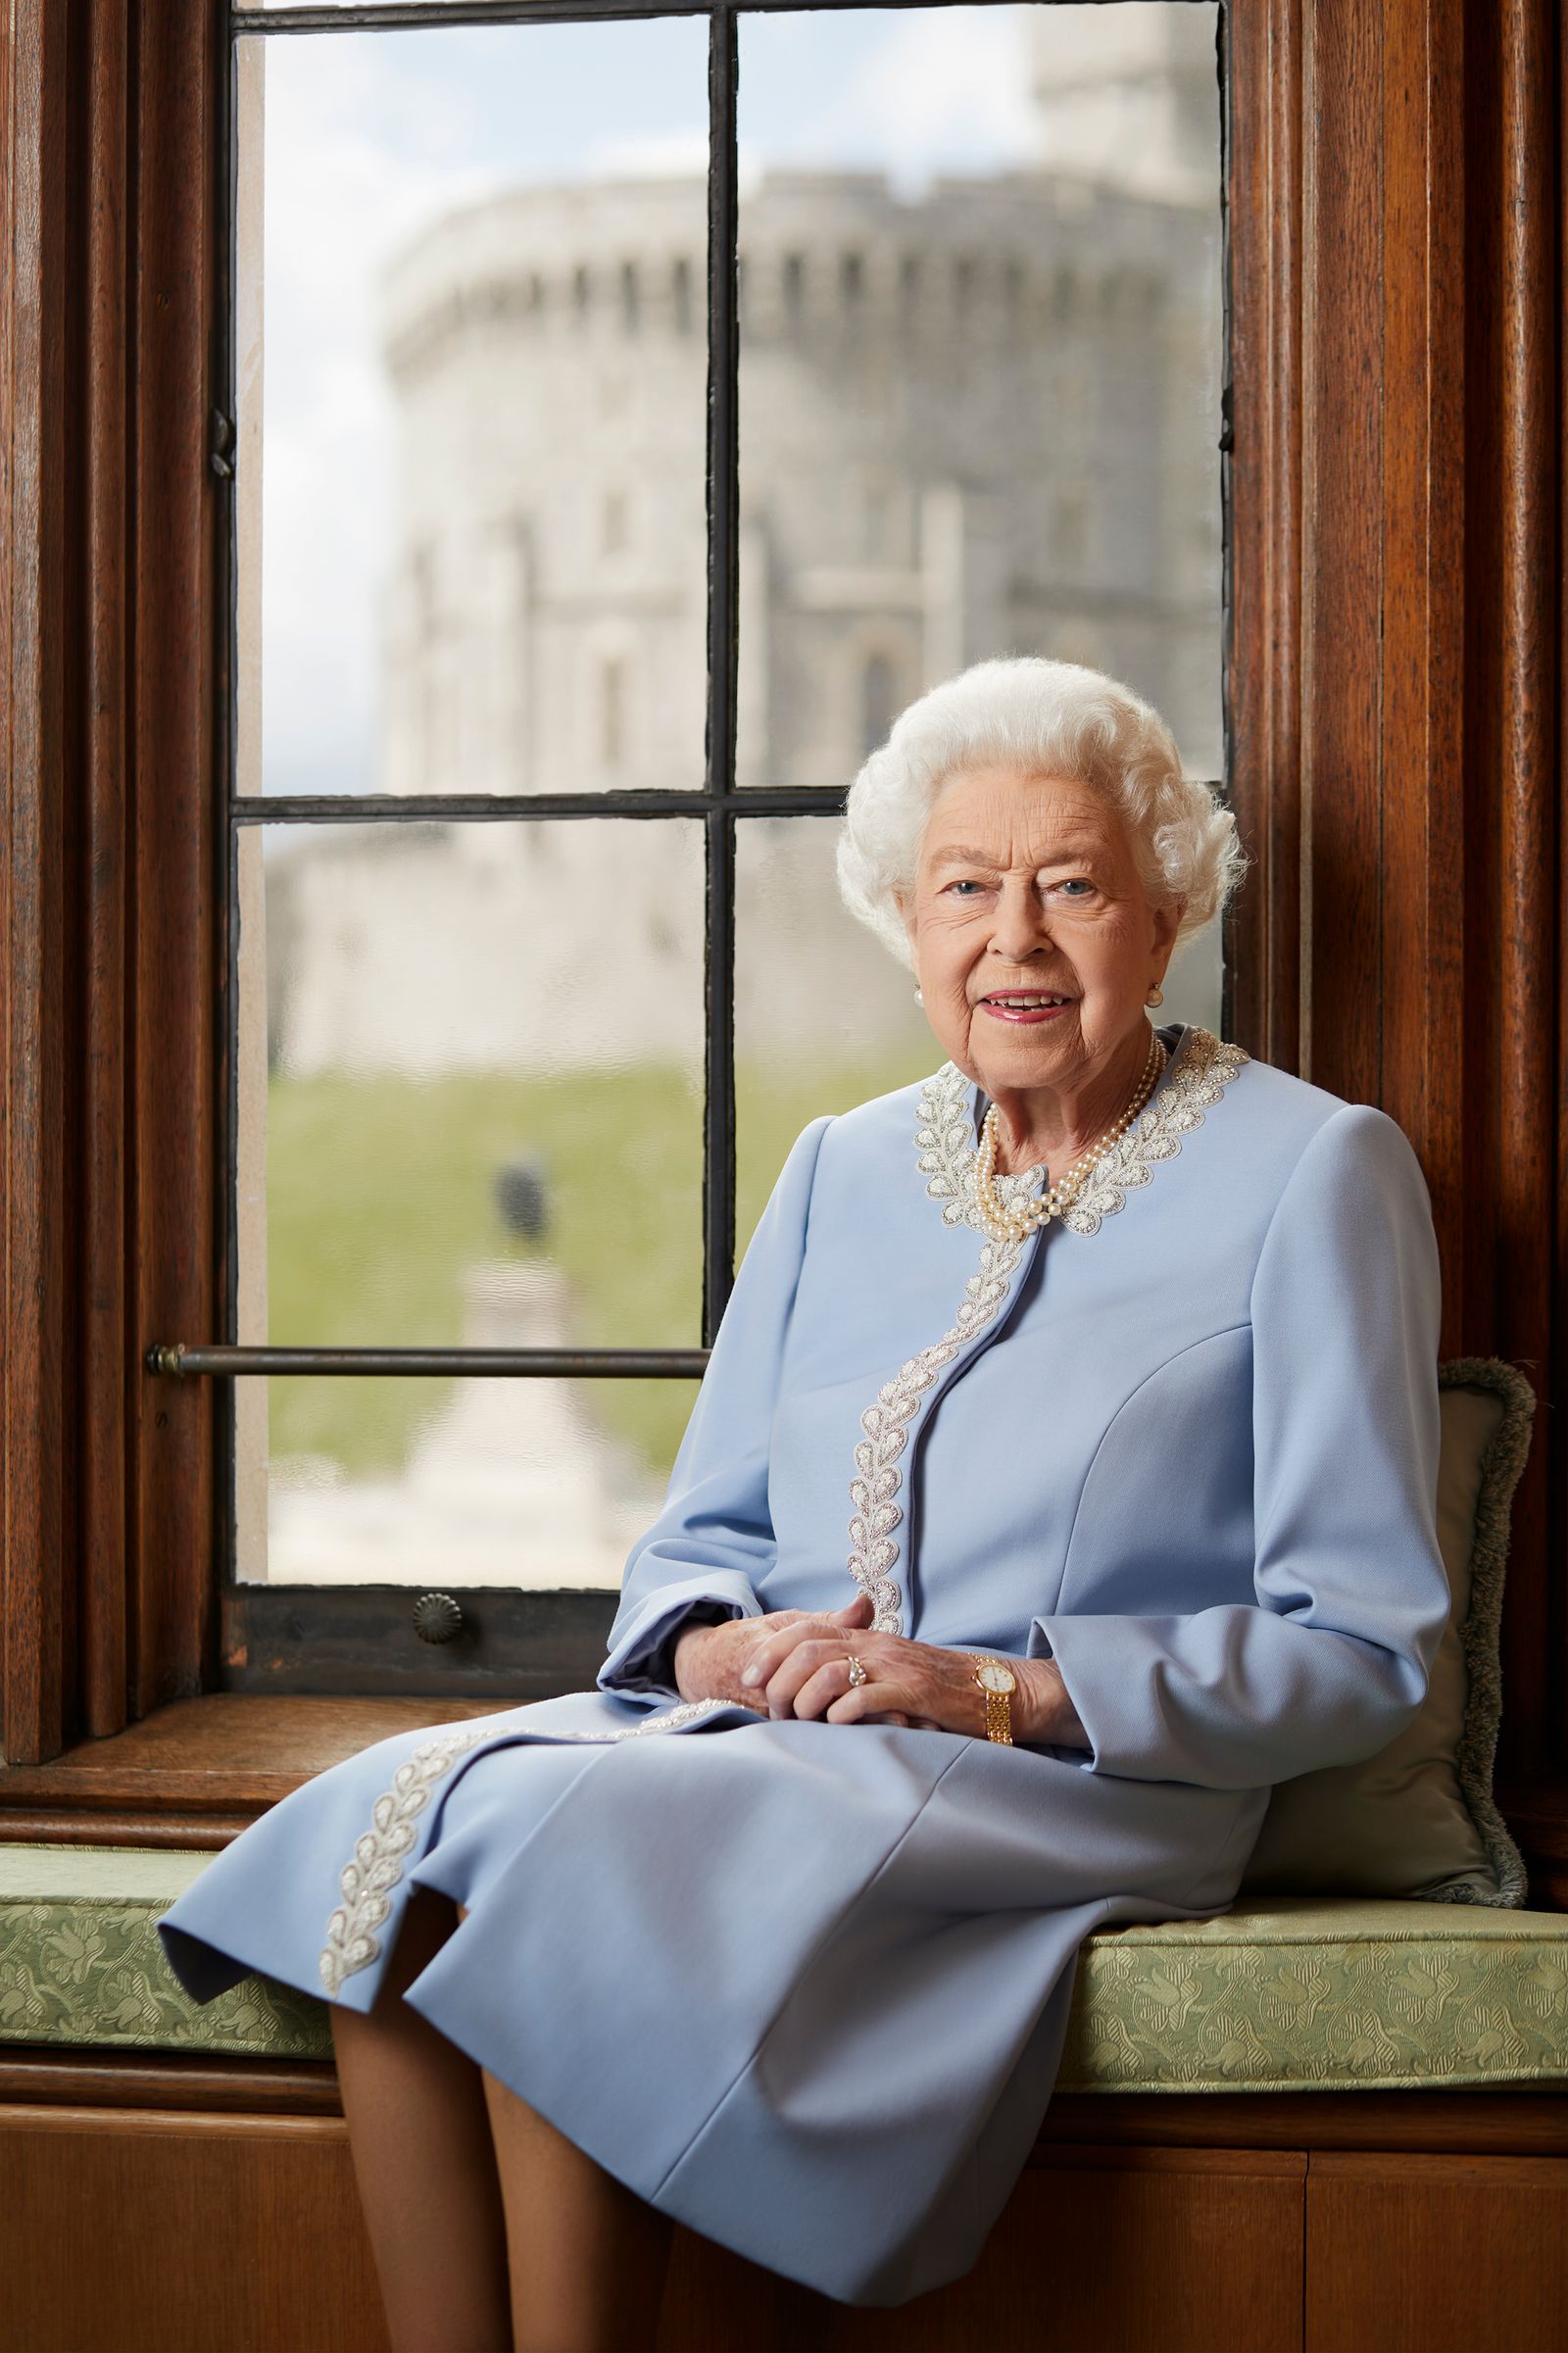 صورة حديثة لملكة بريطانيا إليزابيث الثانية نشرها حساب العائلة الملكية الرسمي- 2 يونيو 2022 -  Twitter/@RoyalFamily